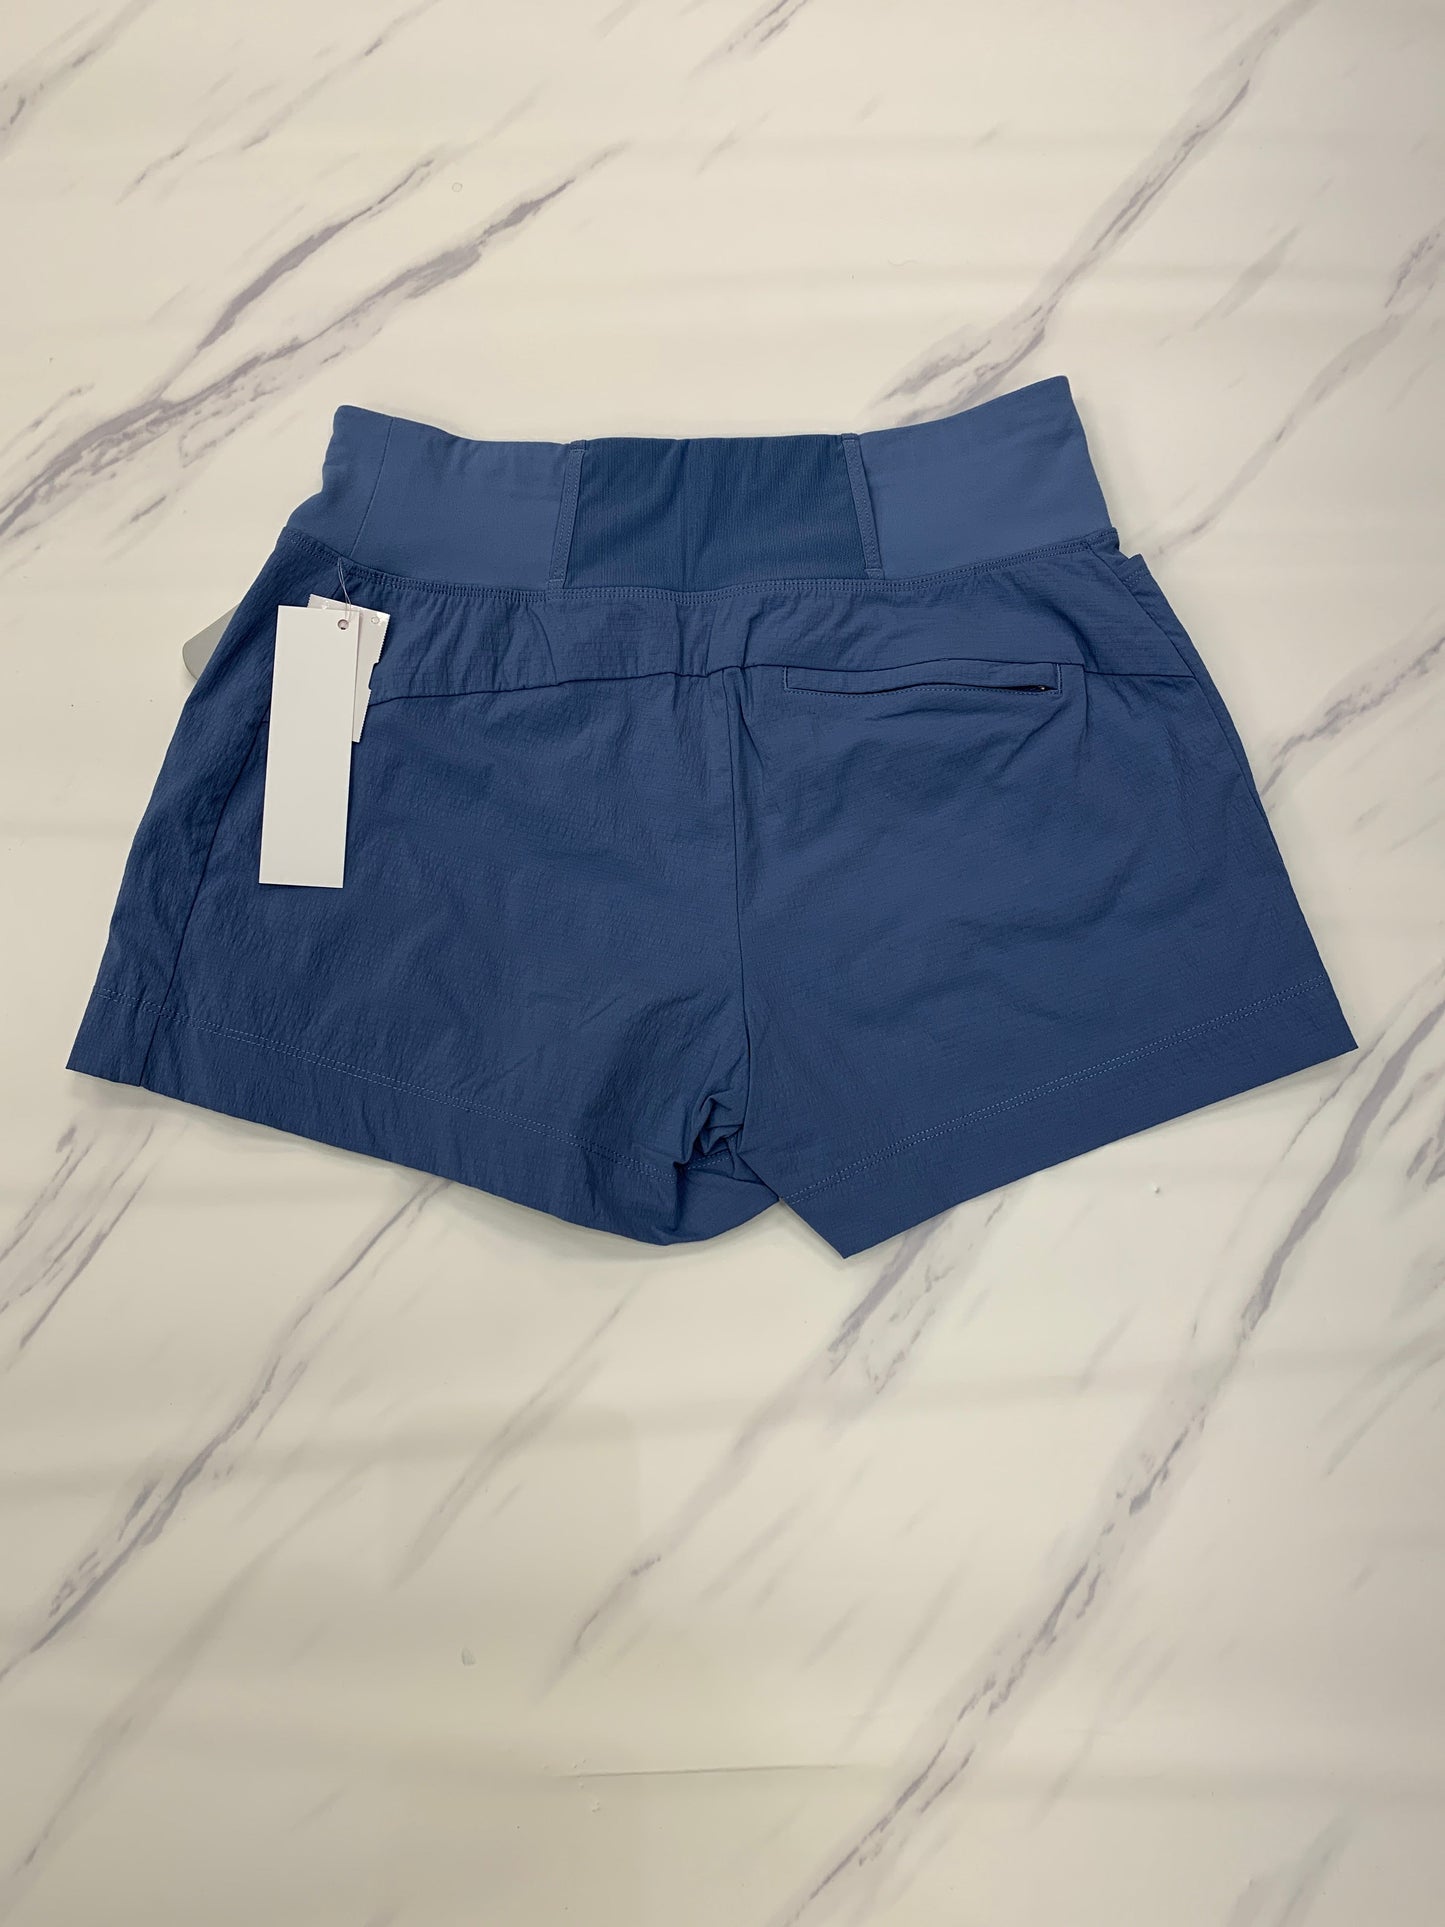 Blue Athletic Shorts Athleta, Size 2